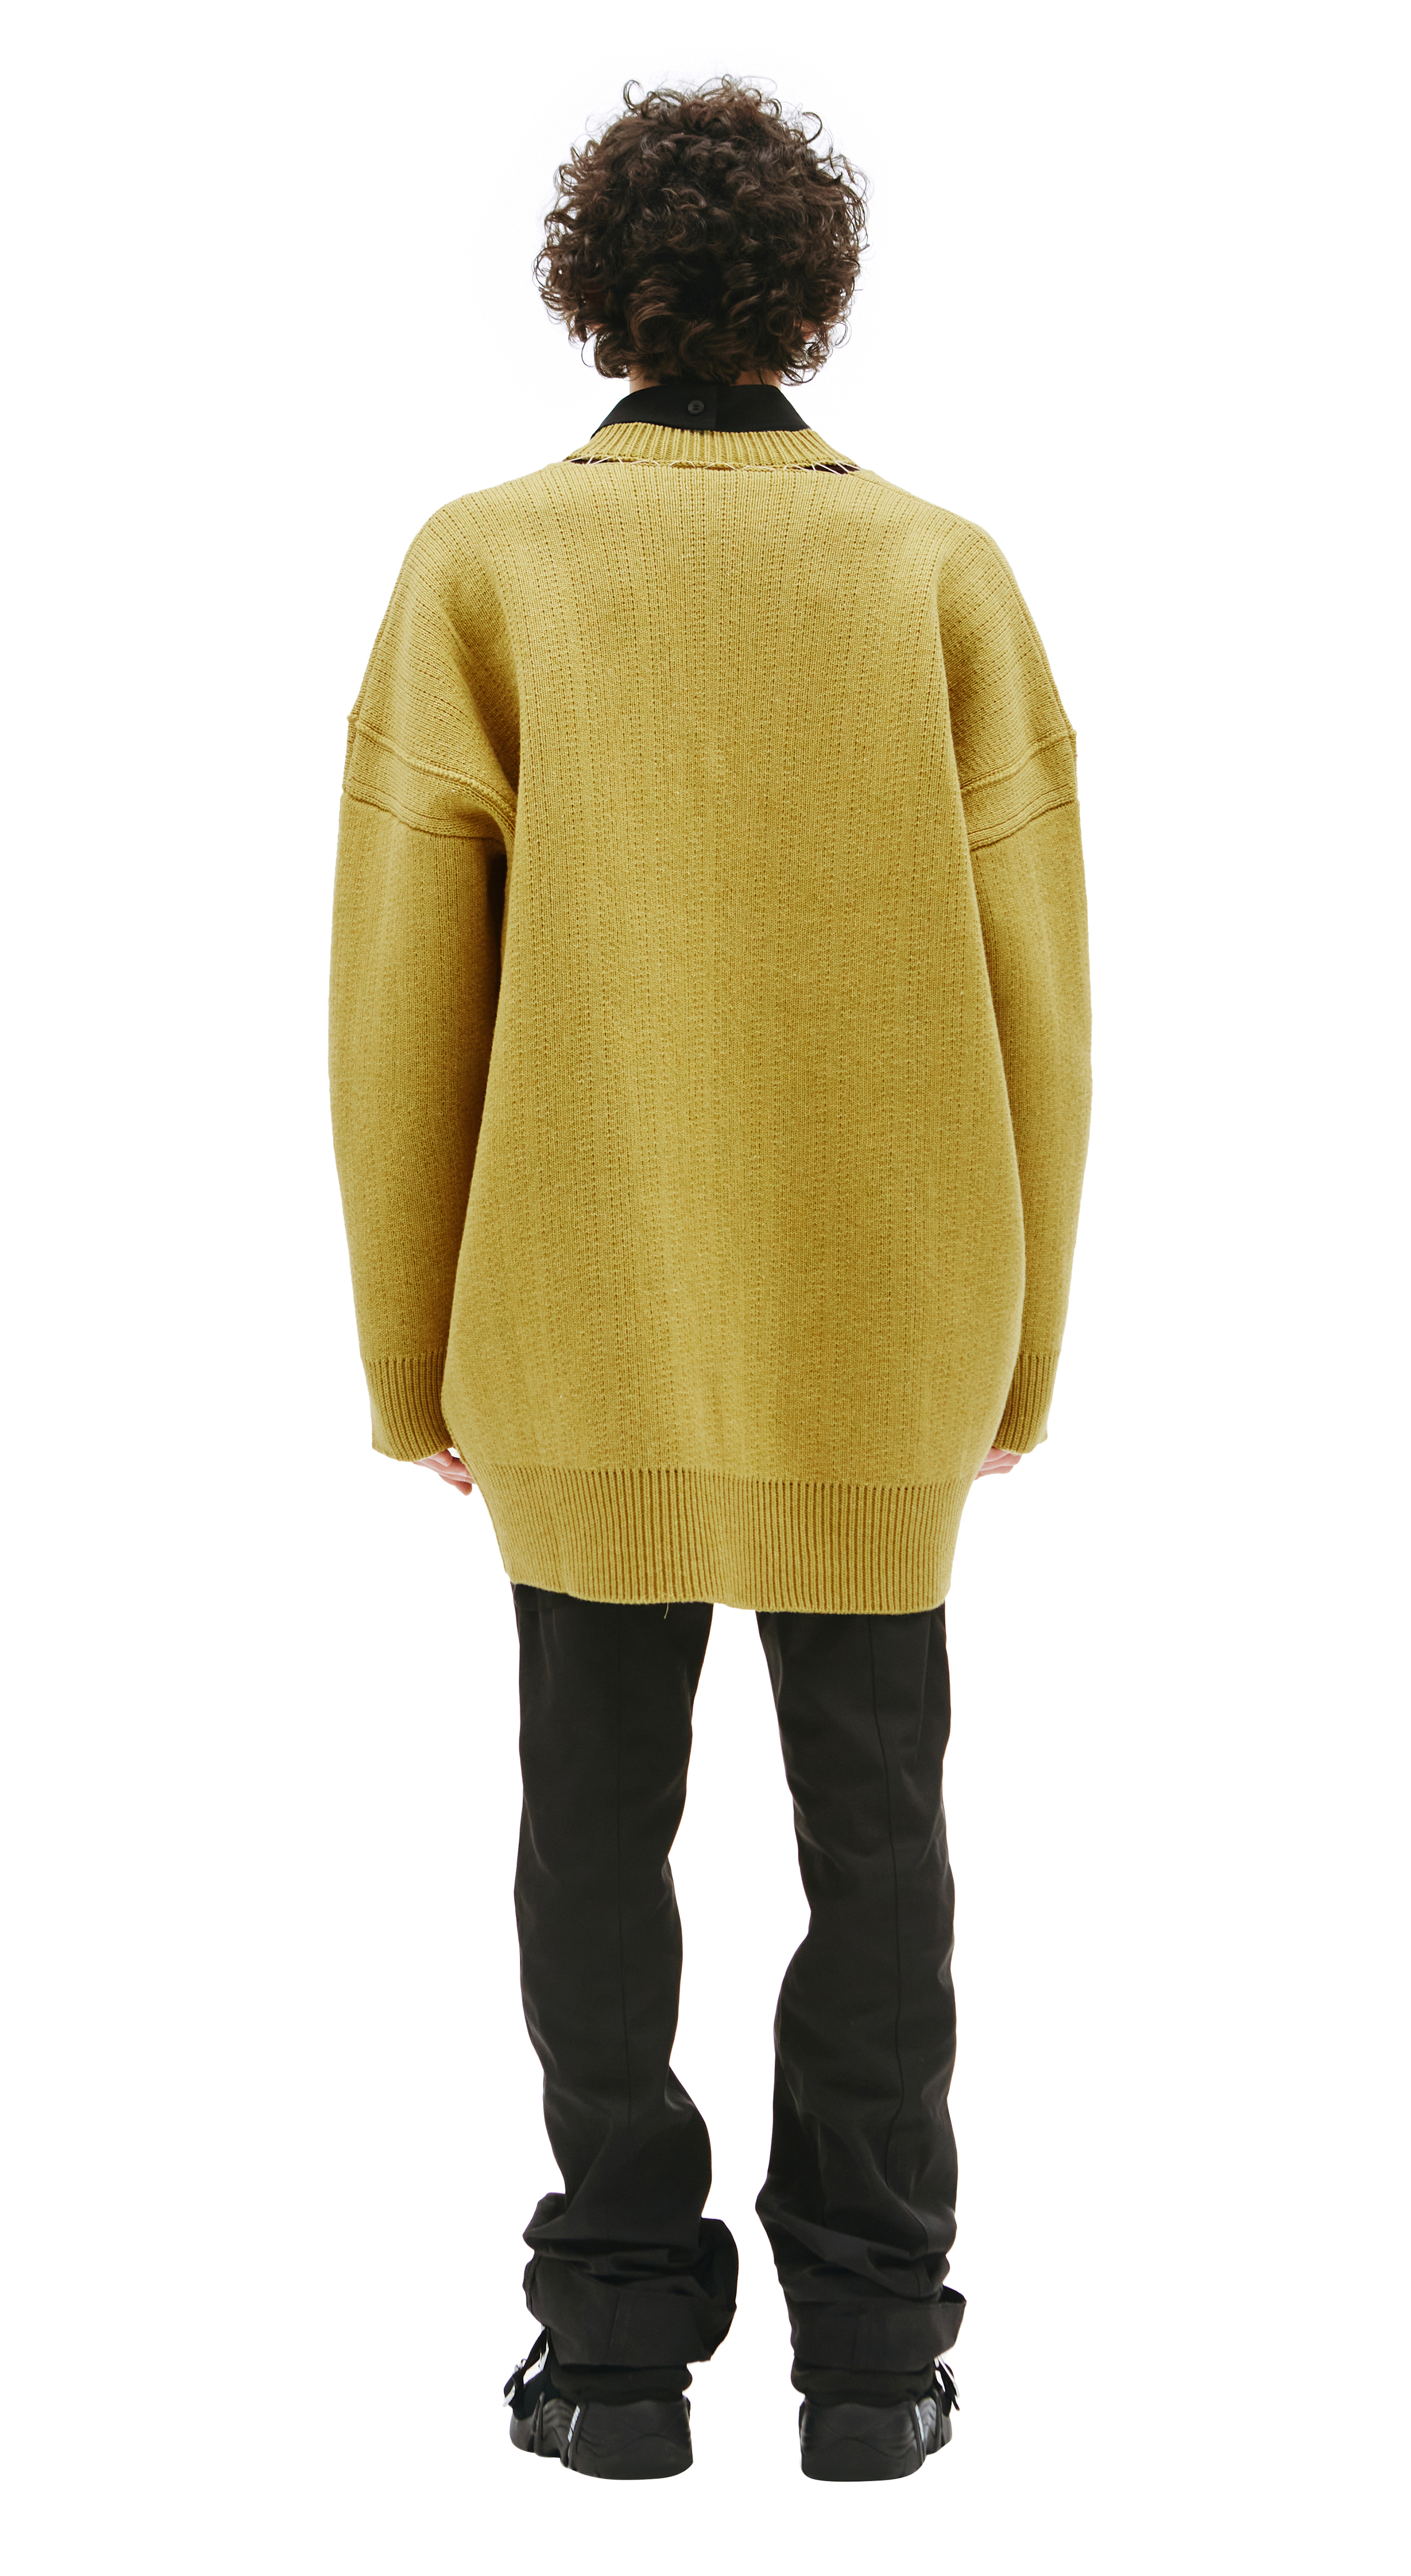 Buy Raf Simons men green v-neck oversize sweater for $1,974 online